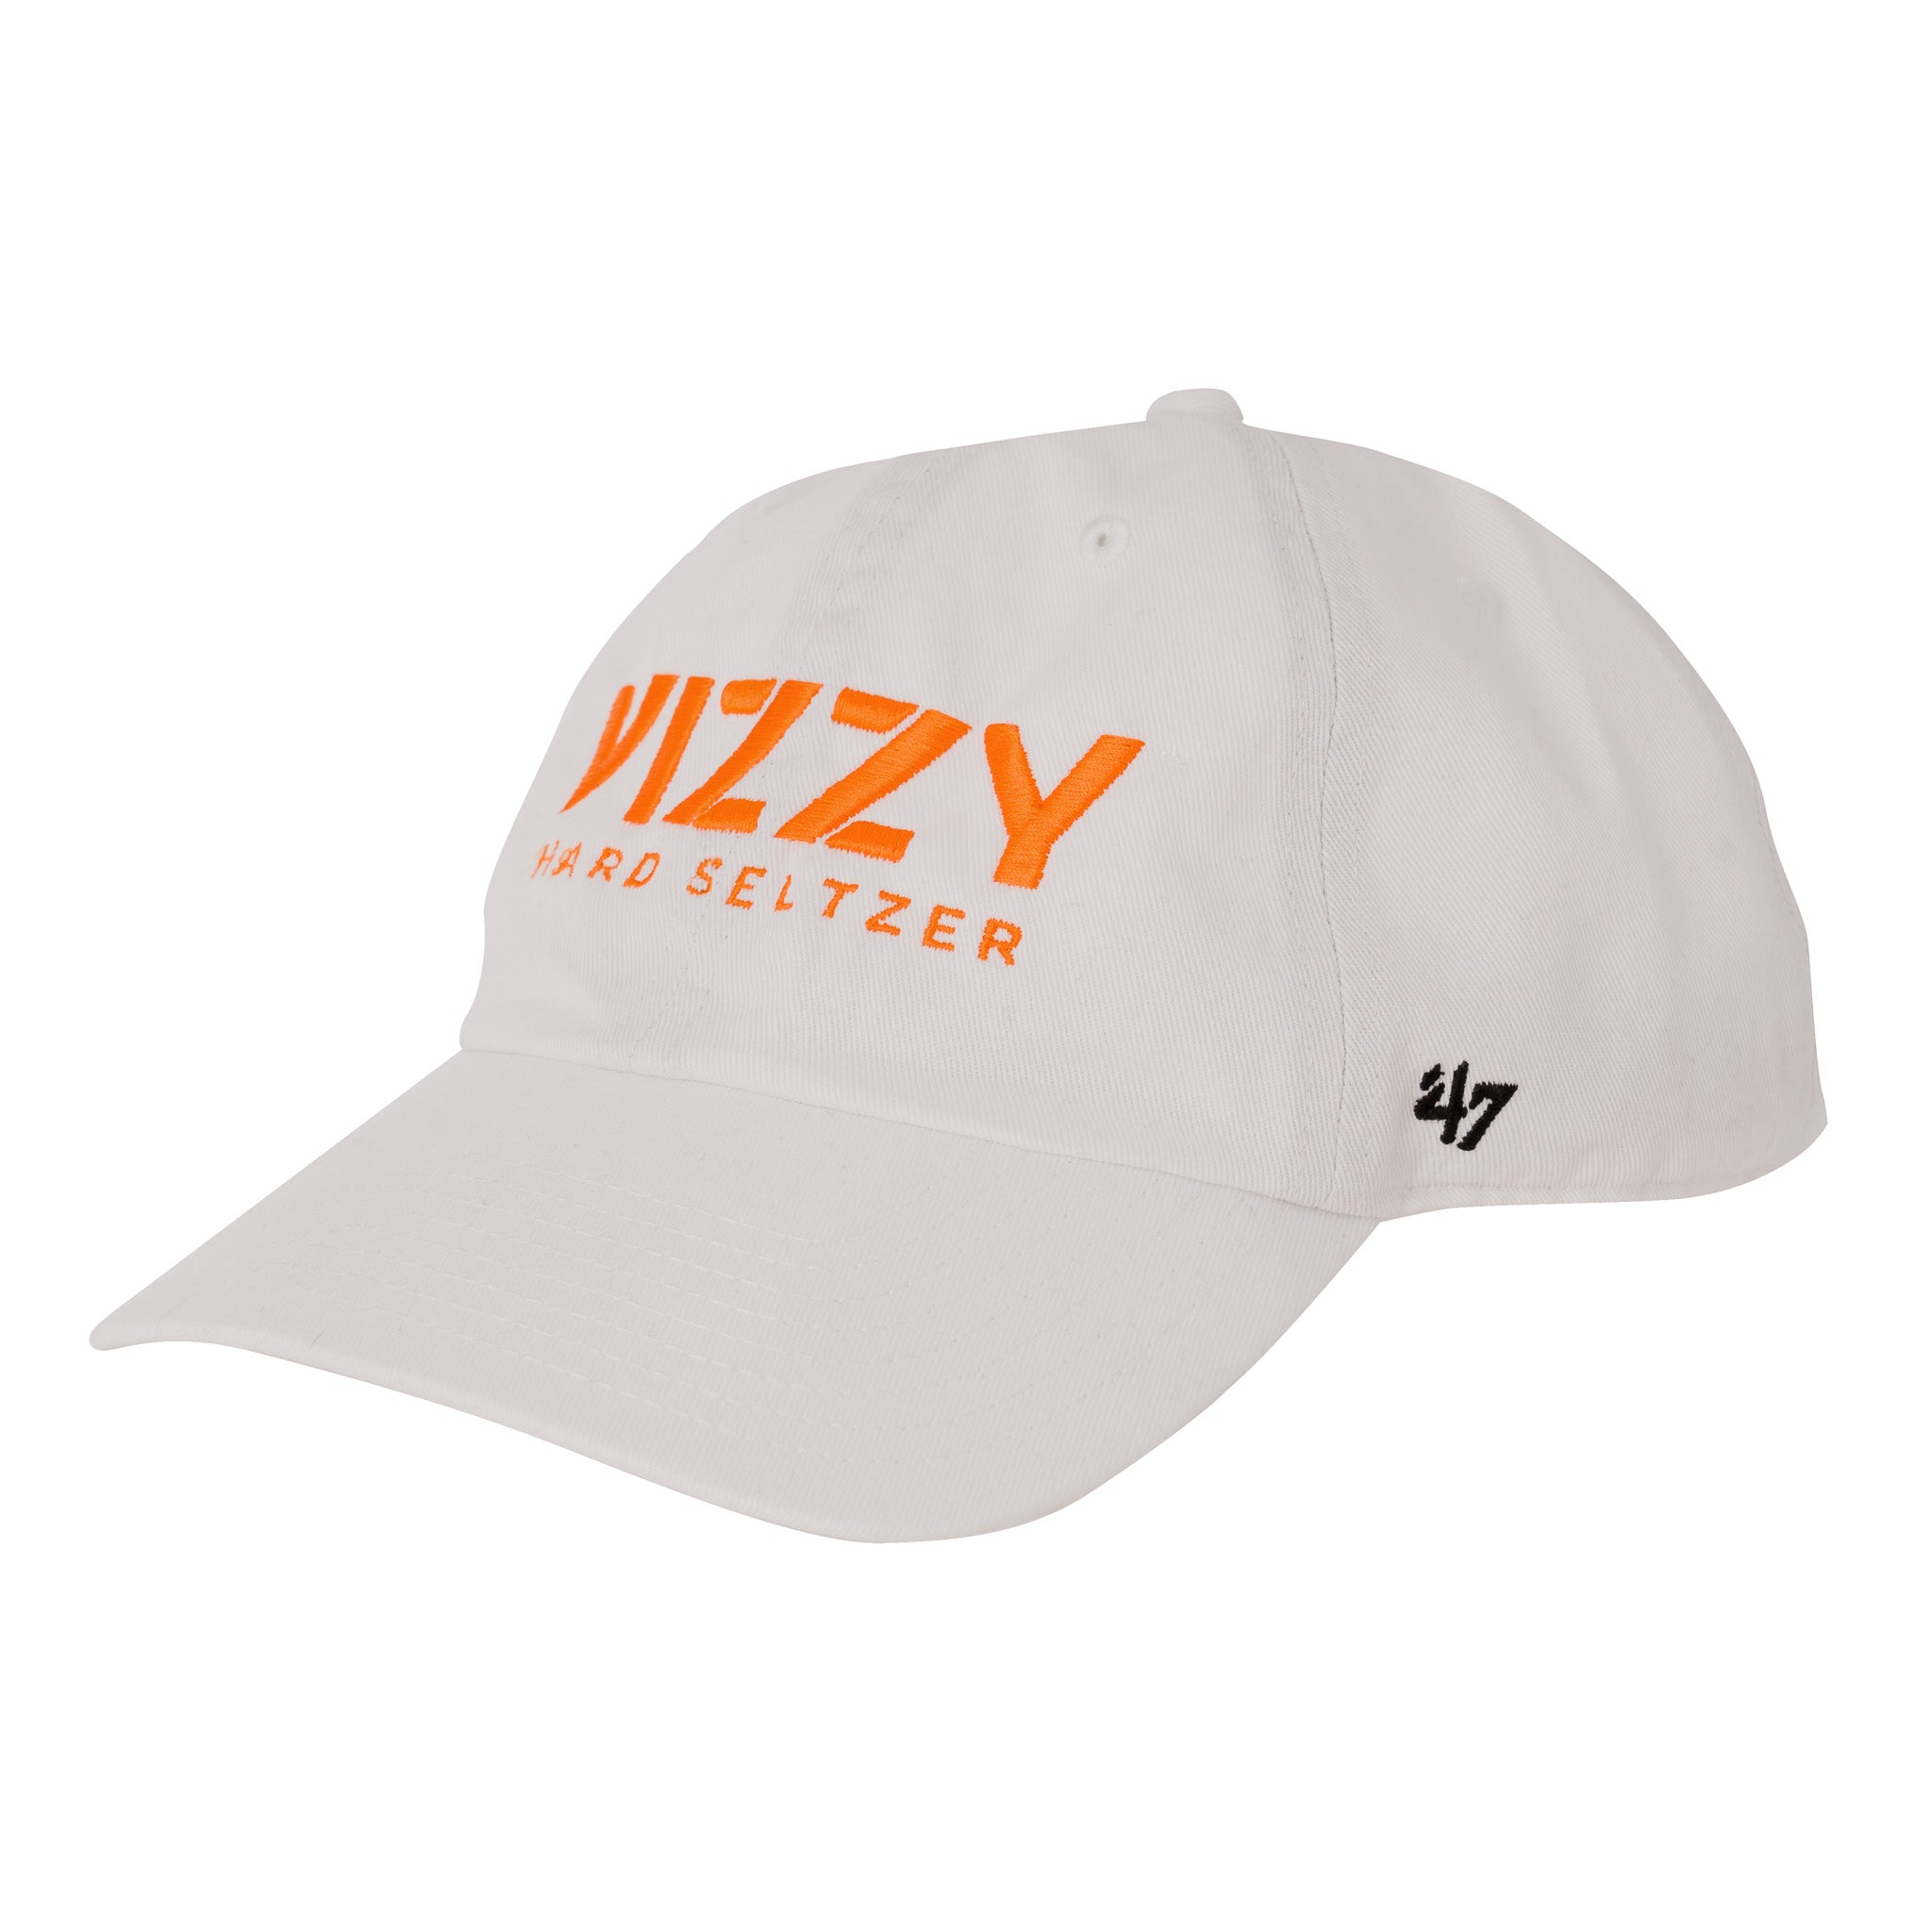 Shop  Vizzy Hard Seltzer